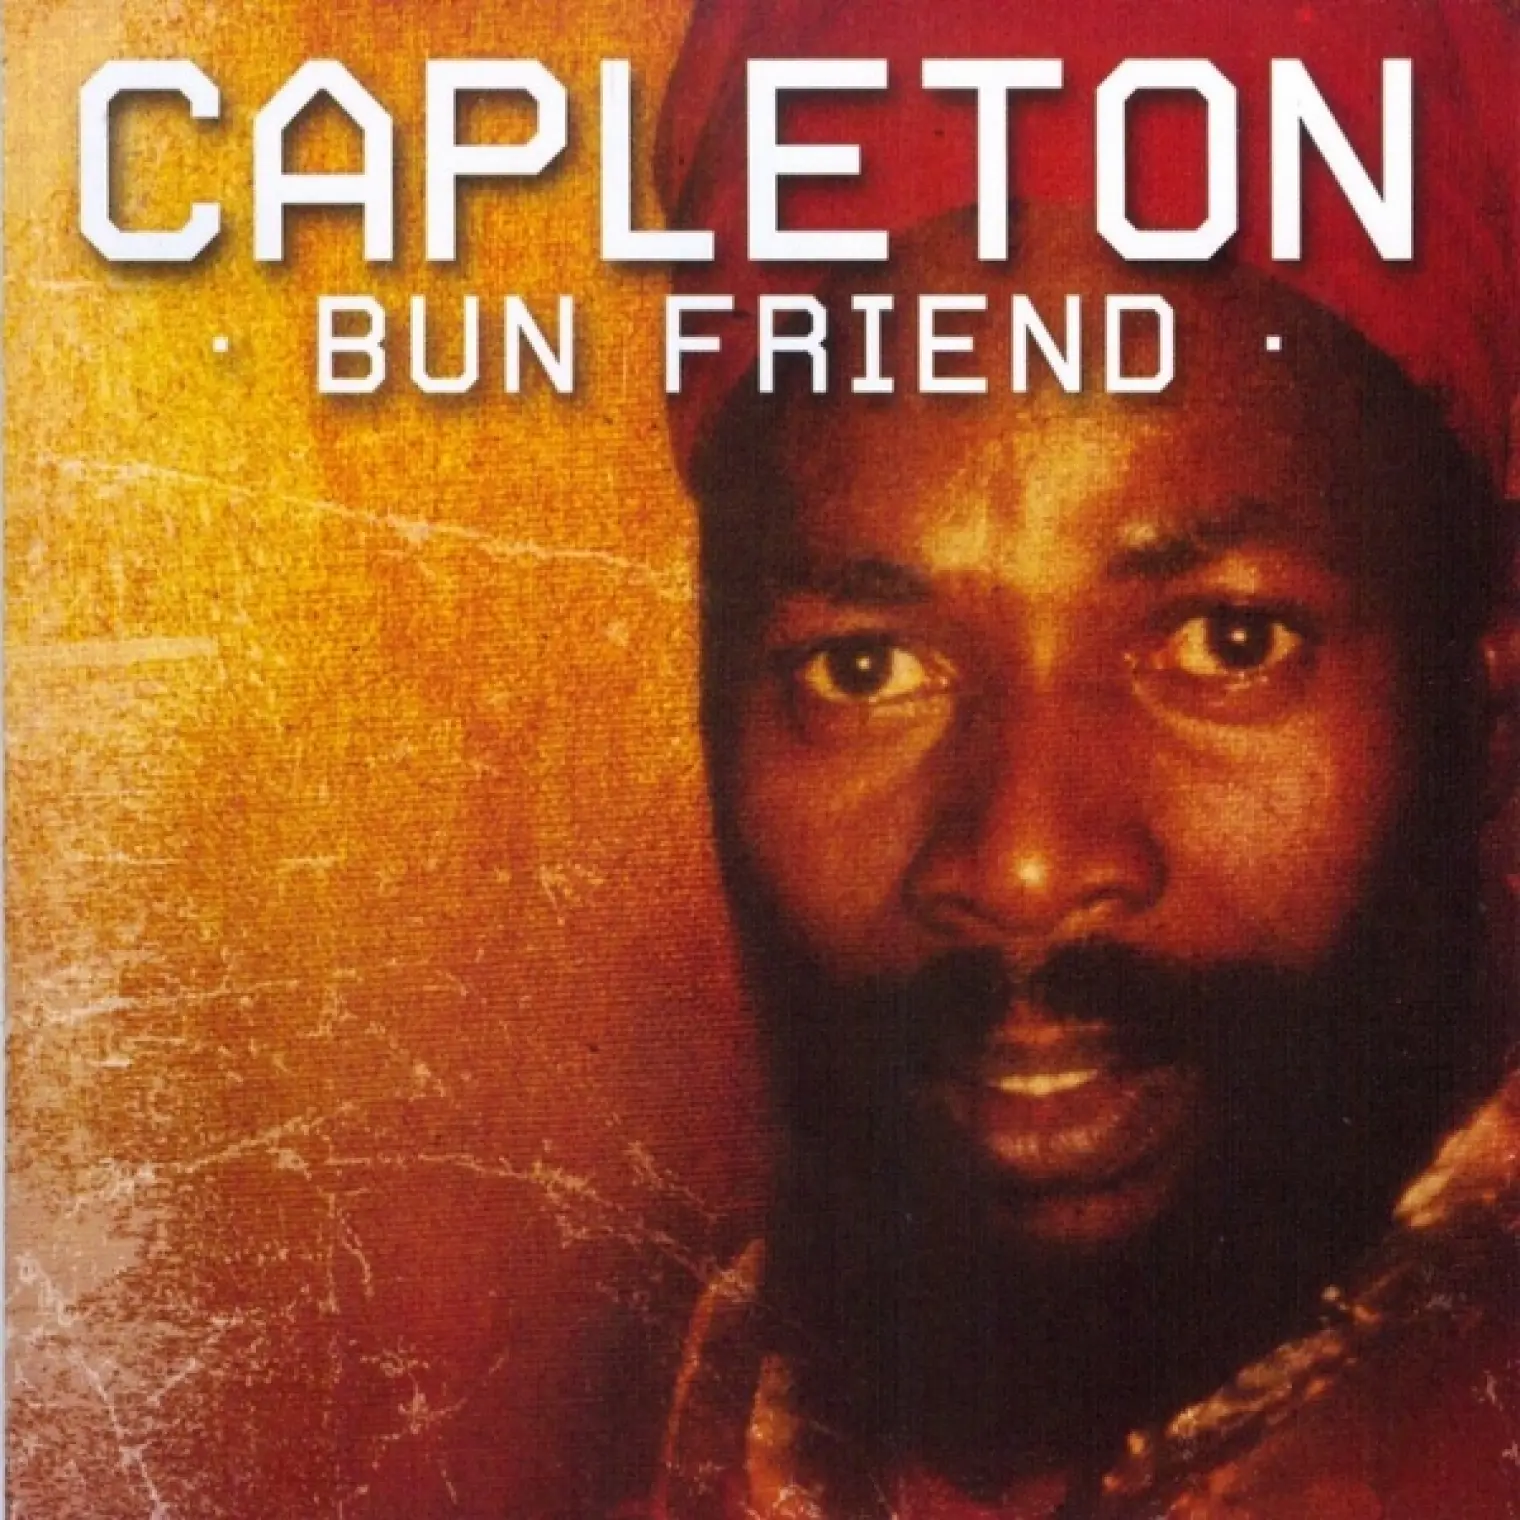 Bun Friend -  Capleton 